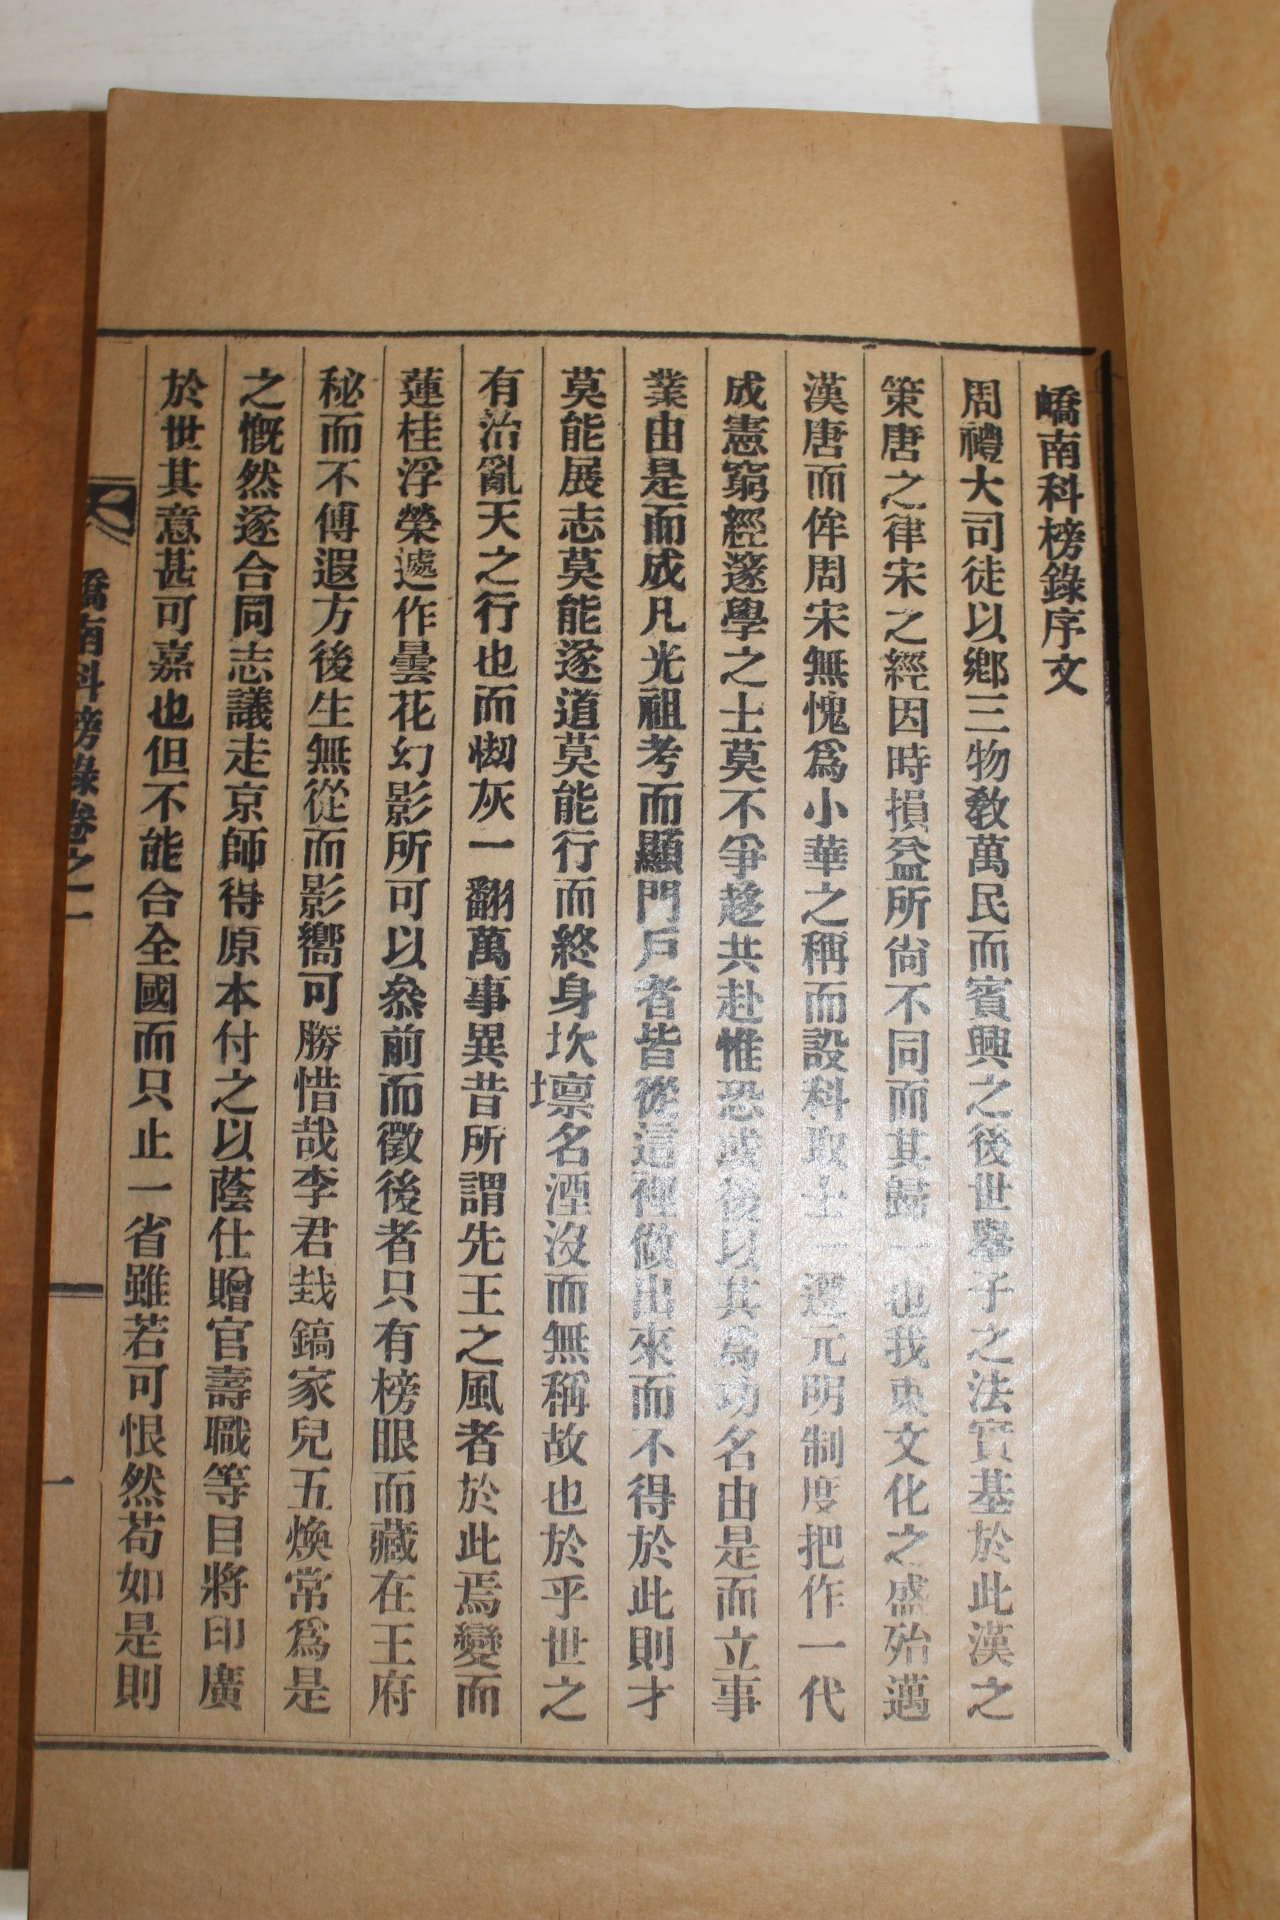 1938년 밀양 교남과방록(嶠南科榜錄) 3책